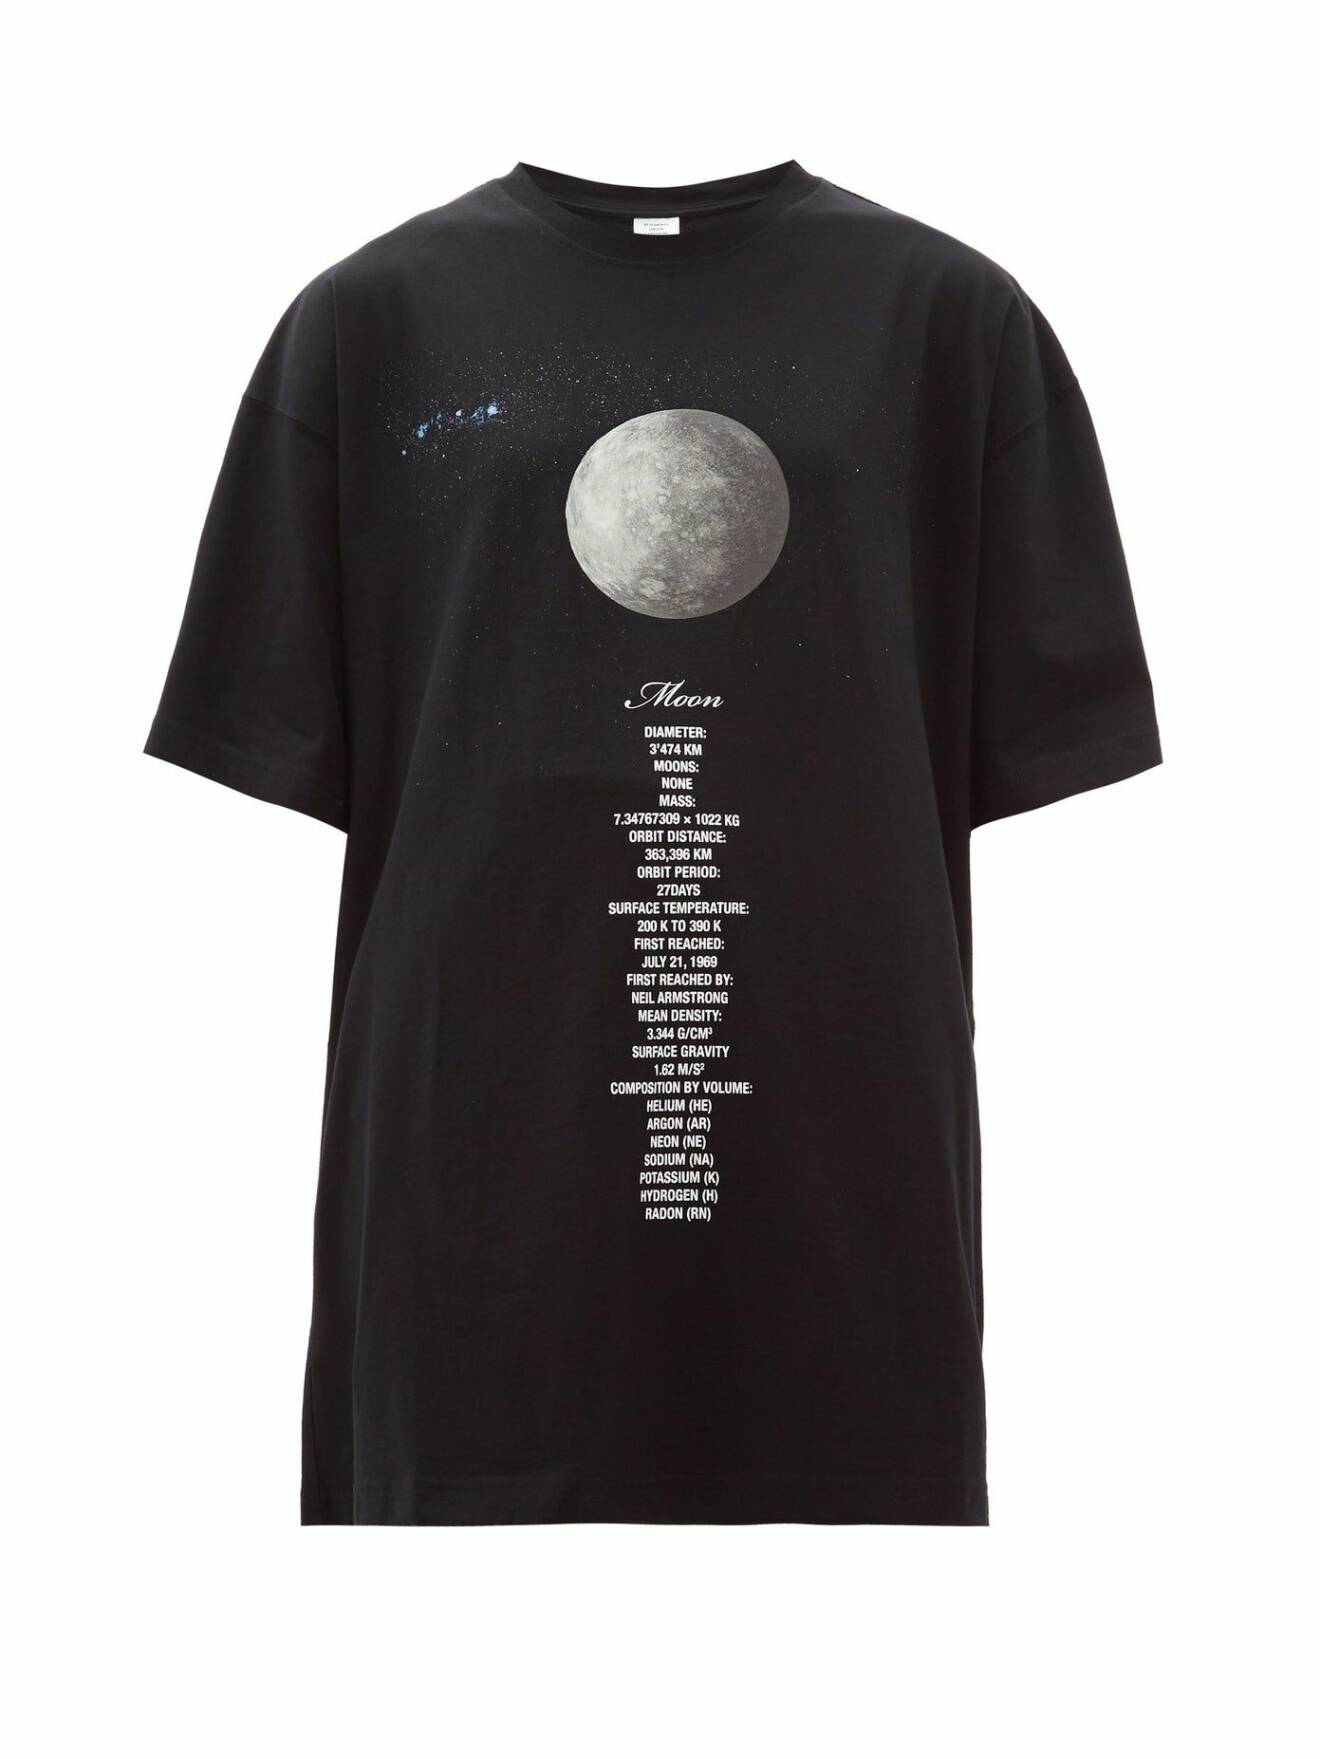 ed T-shirt från Vetements AW19-kollektion med inspiration från månen.